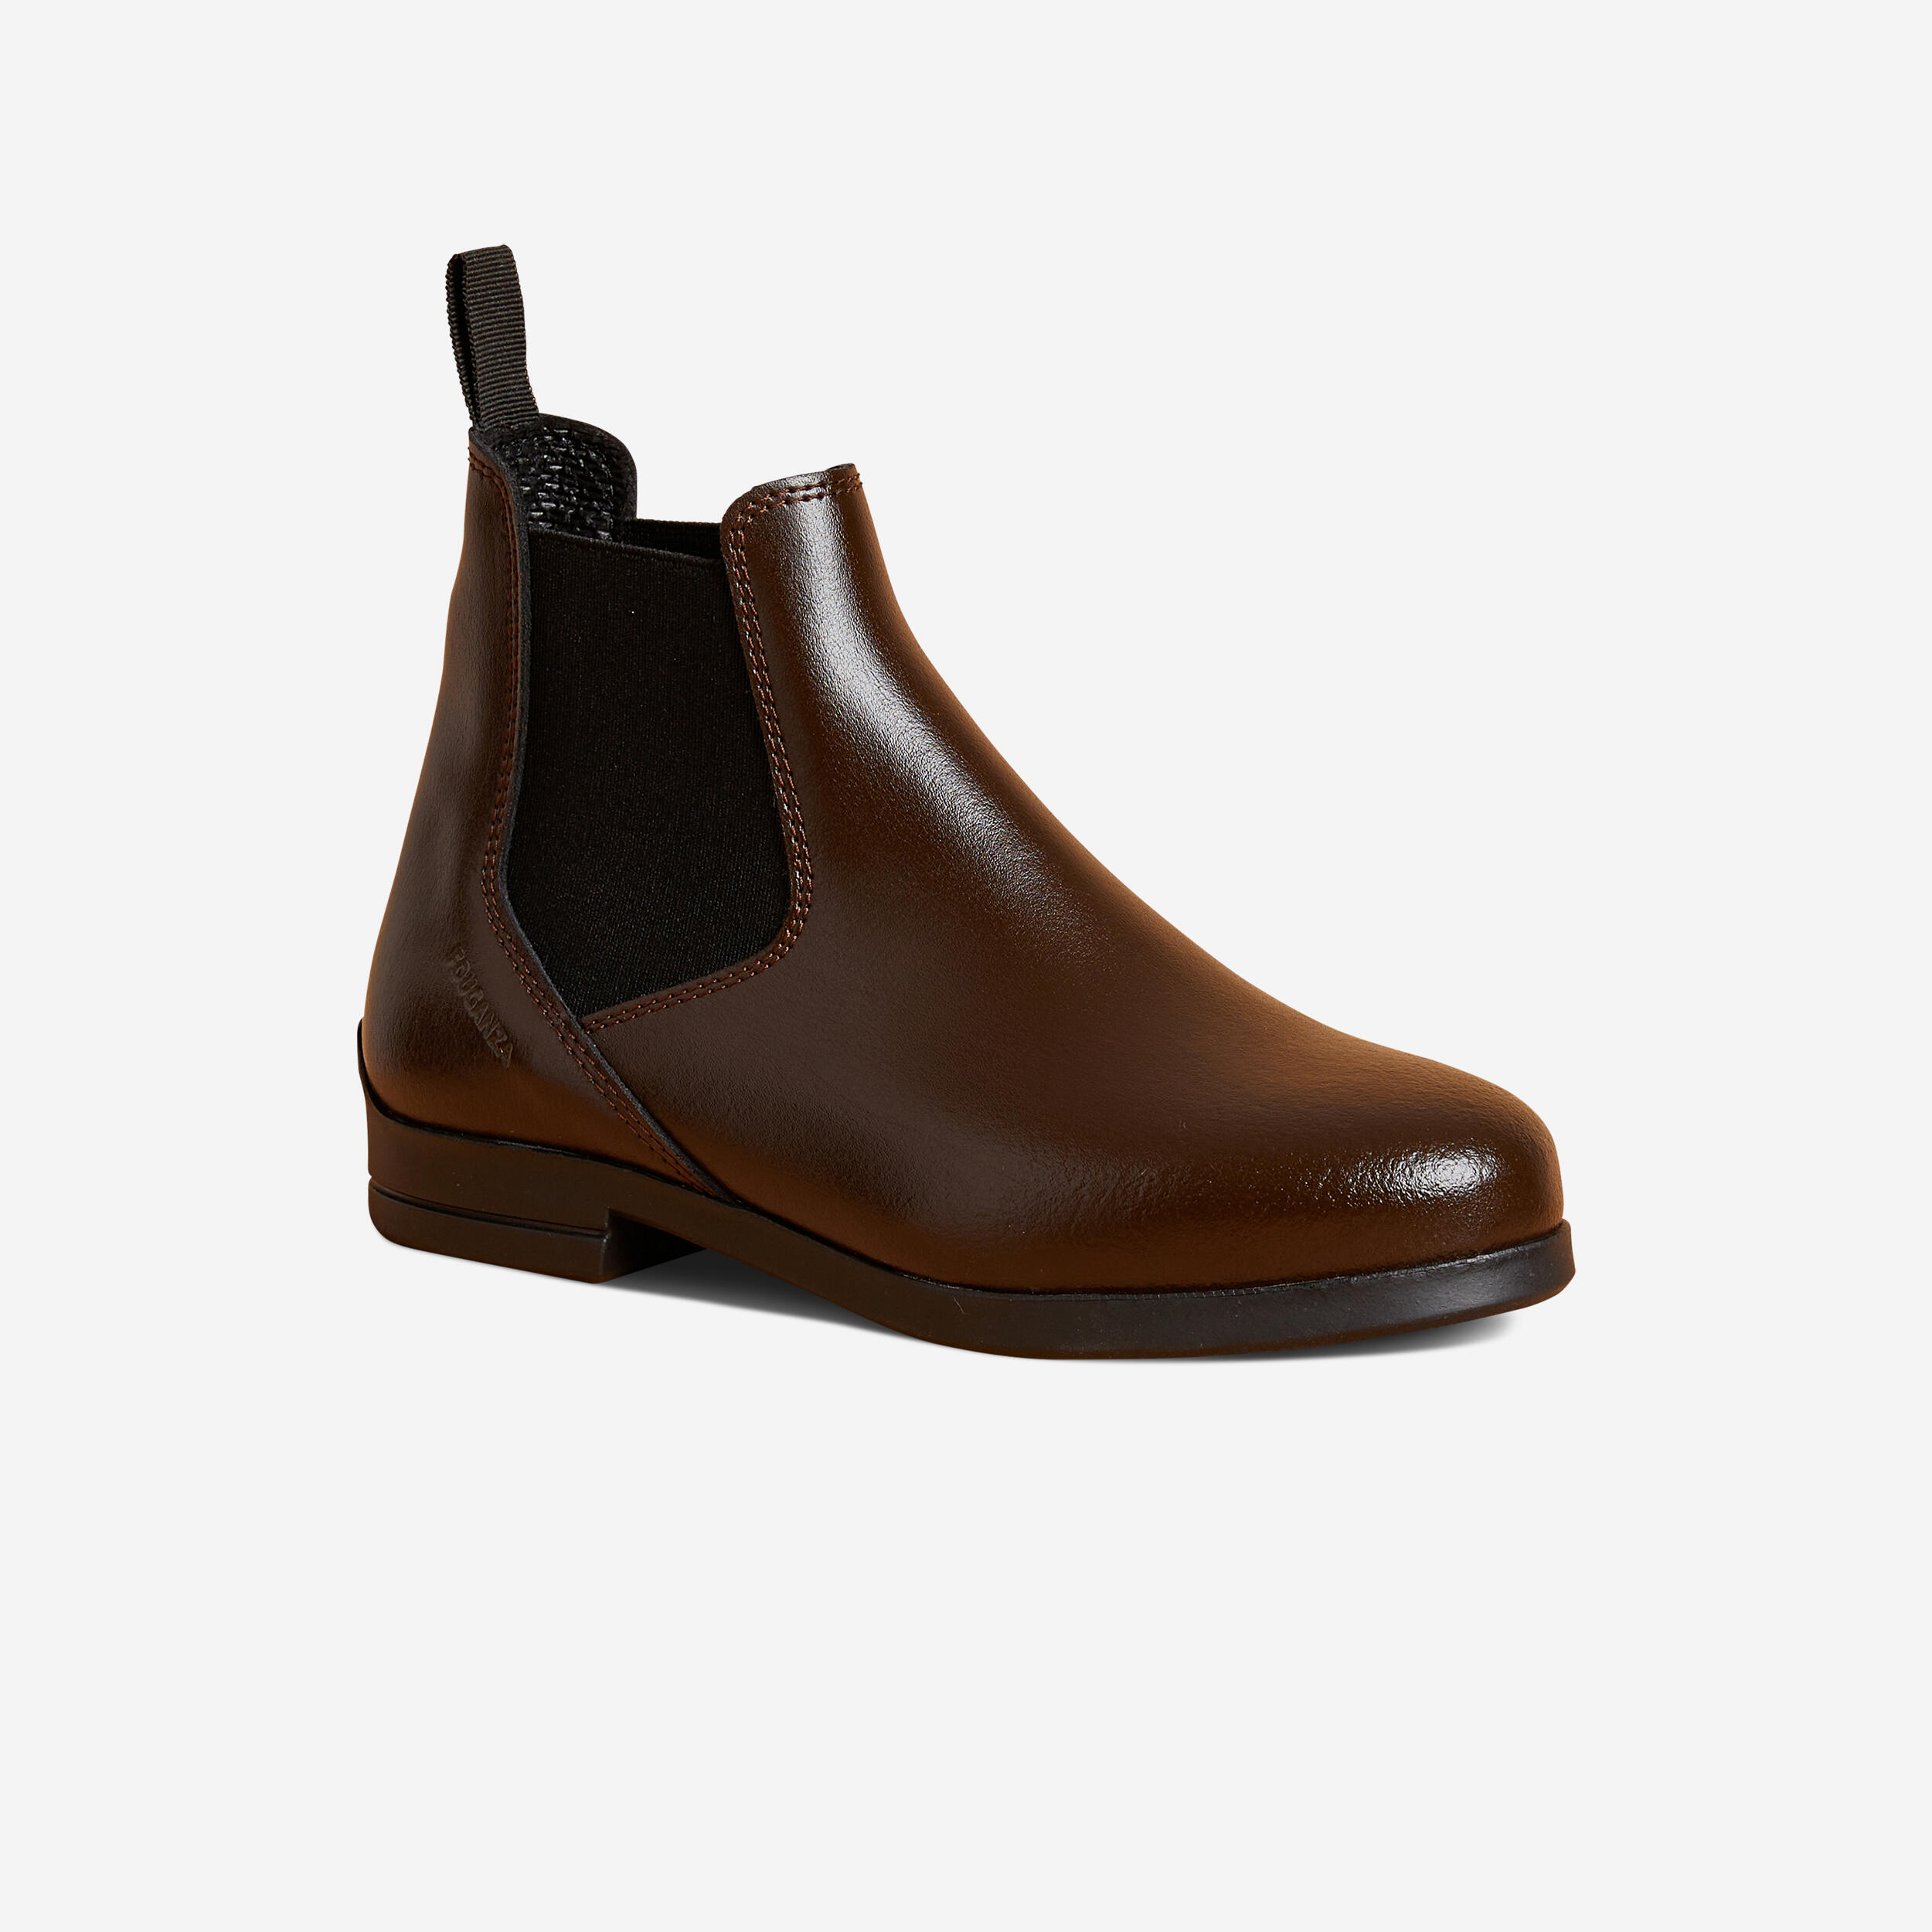 boots équitation enfant - 500 marron - fouganza